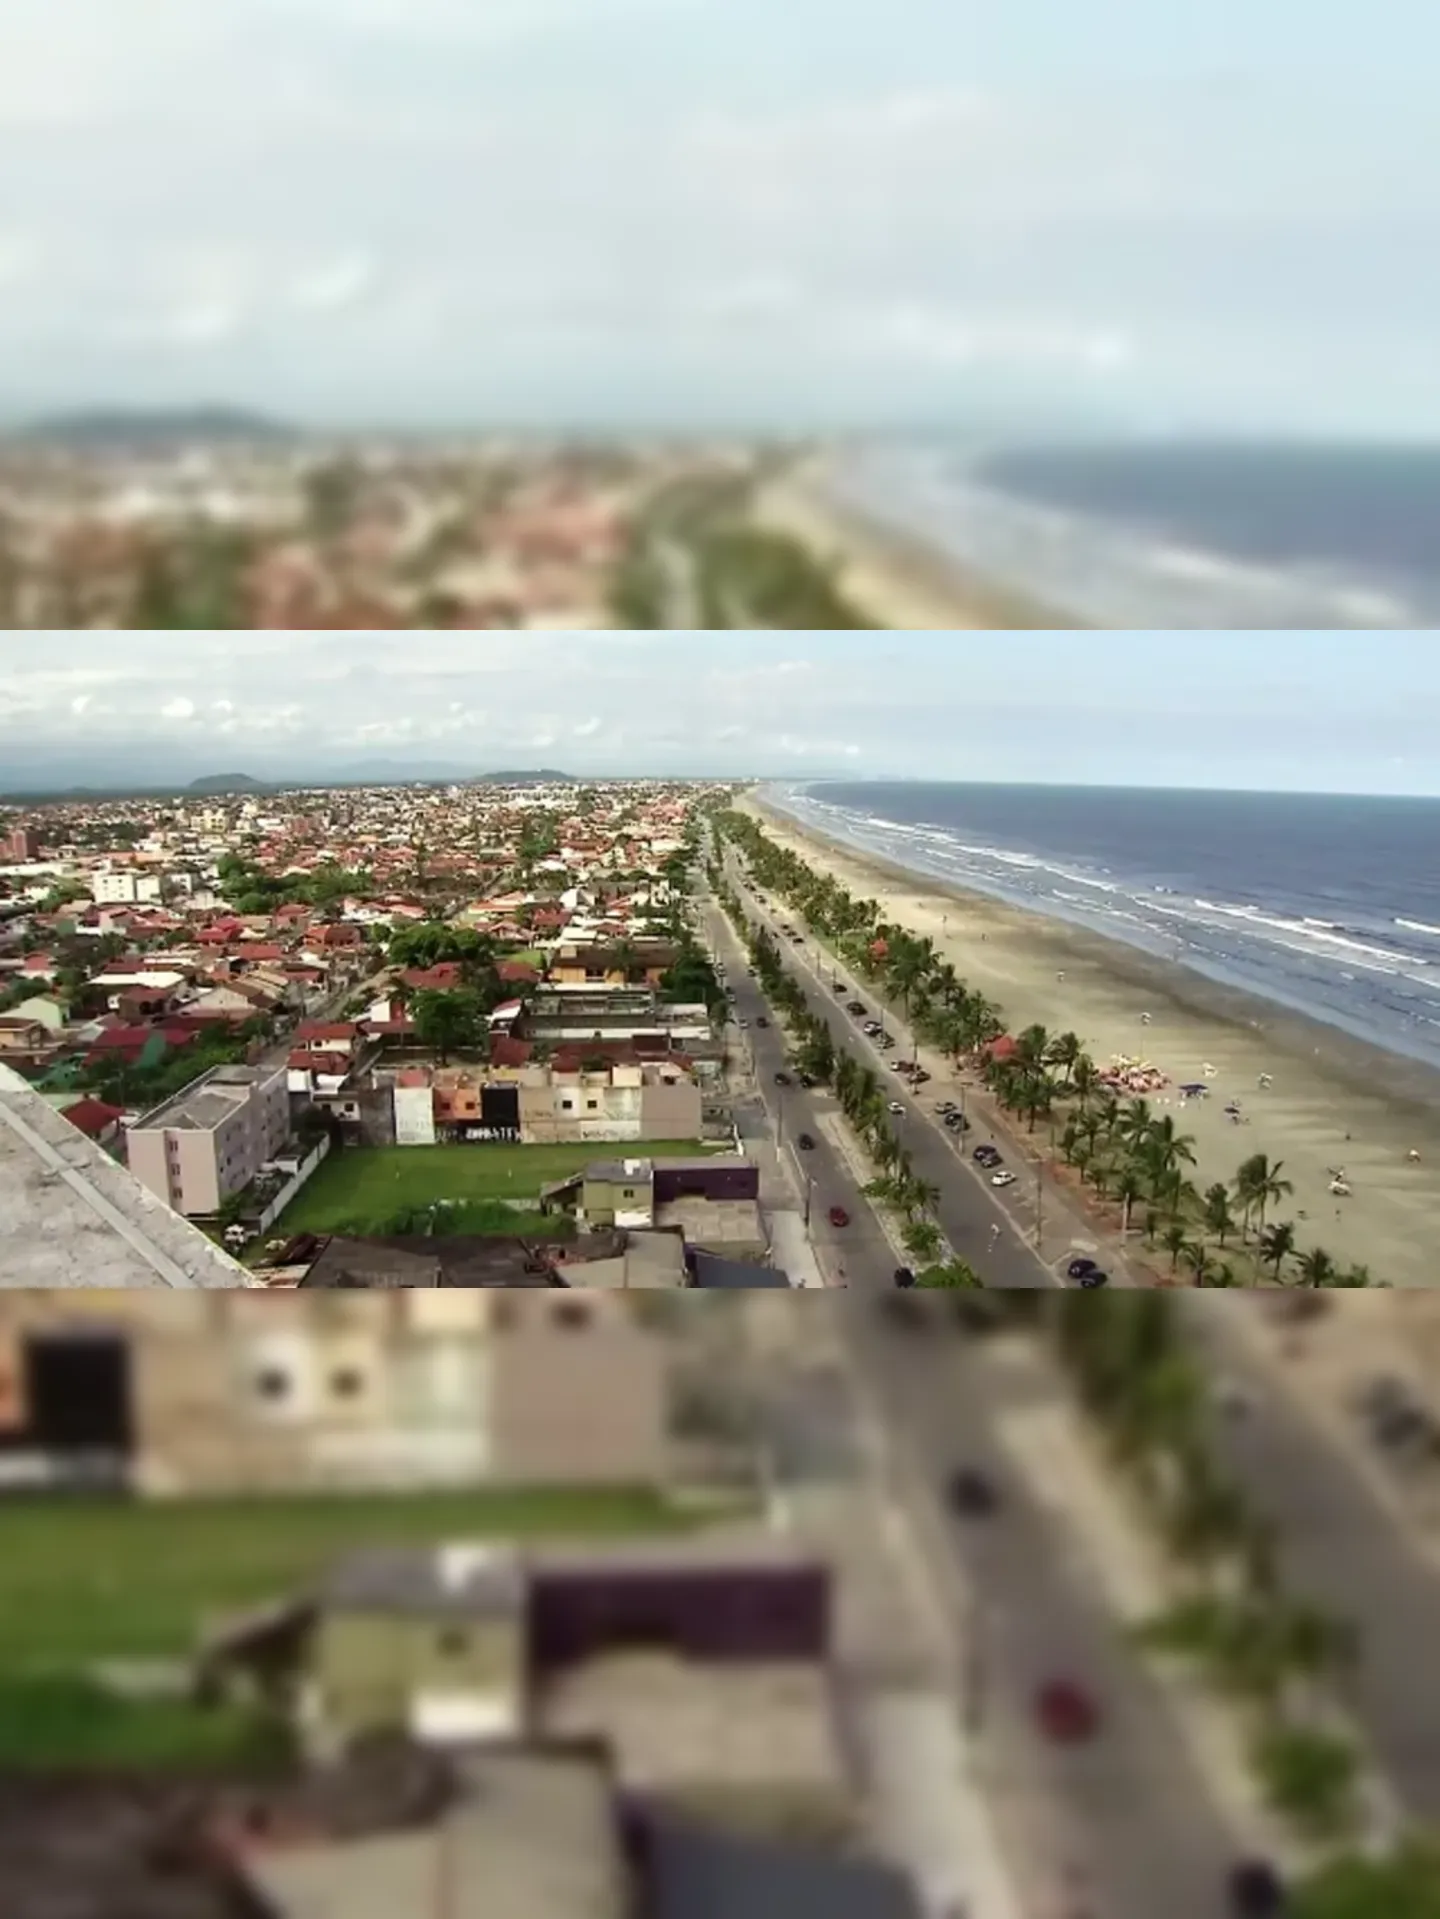 Tremor foi sentido na orla da praia de Peruíbe, no litoral de São Paulo